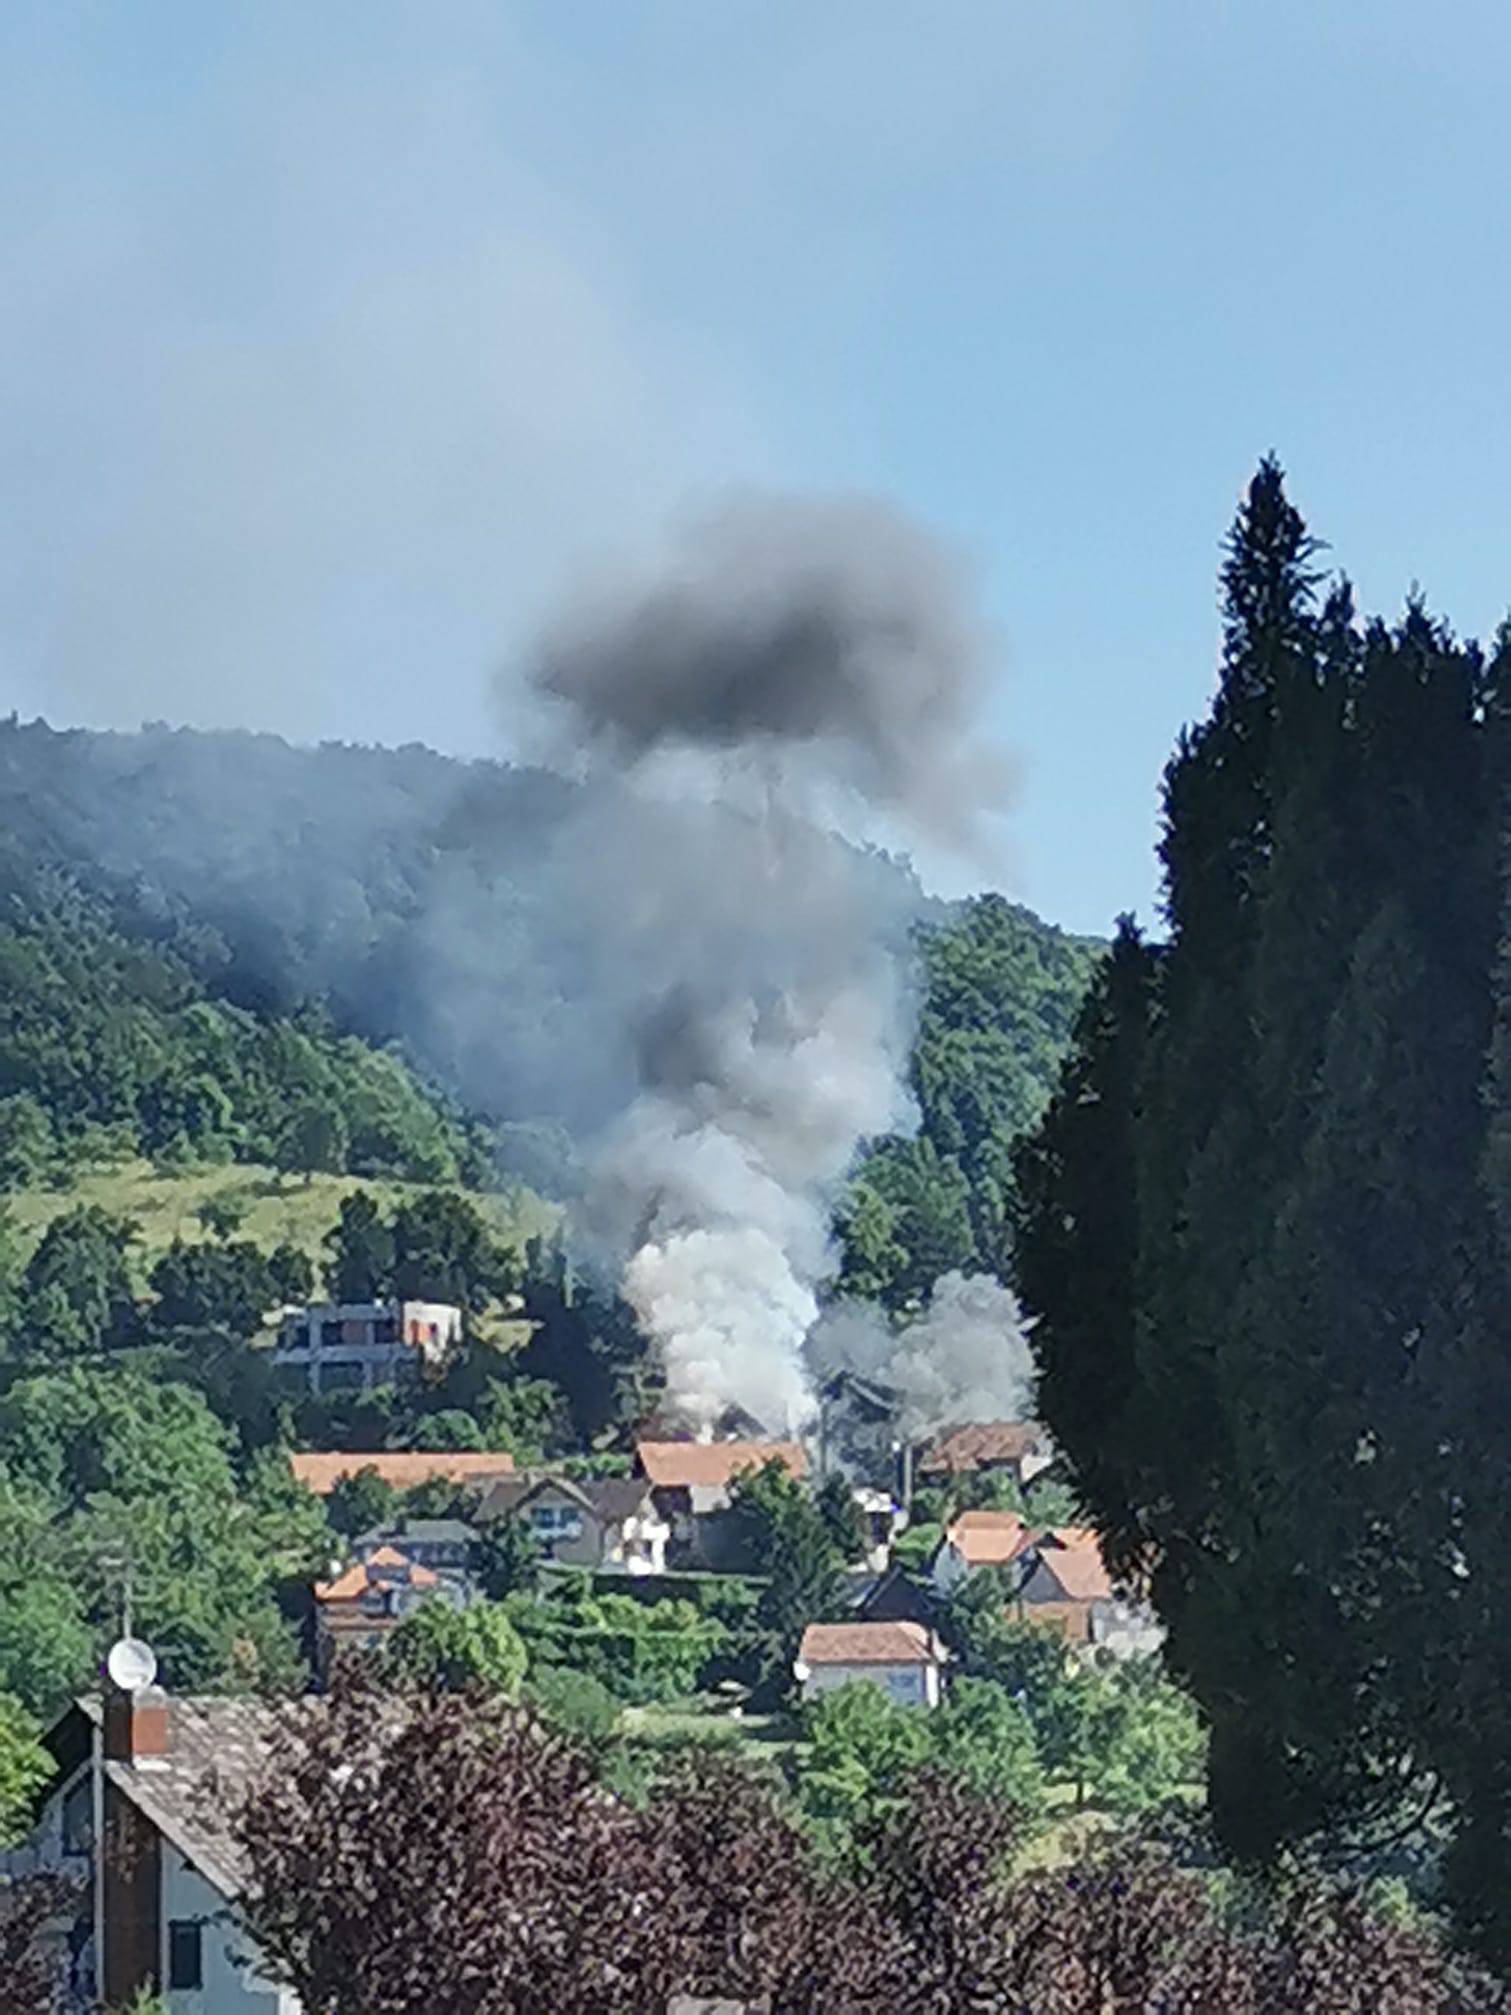 Šokantna snimka: Zagrebački vatrogasac snimio je trenutak eksplozije na 2 metra od njega